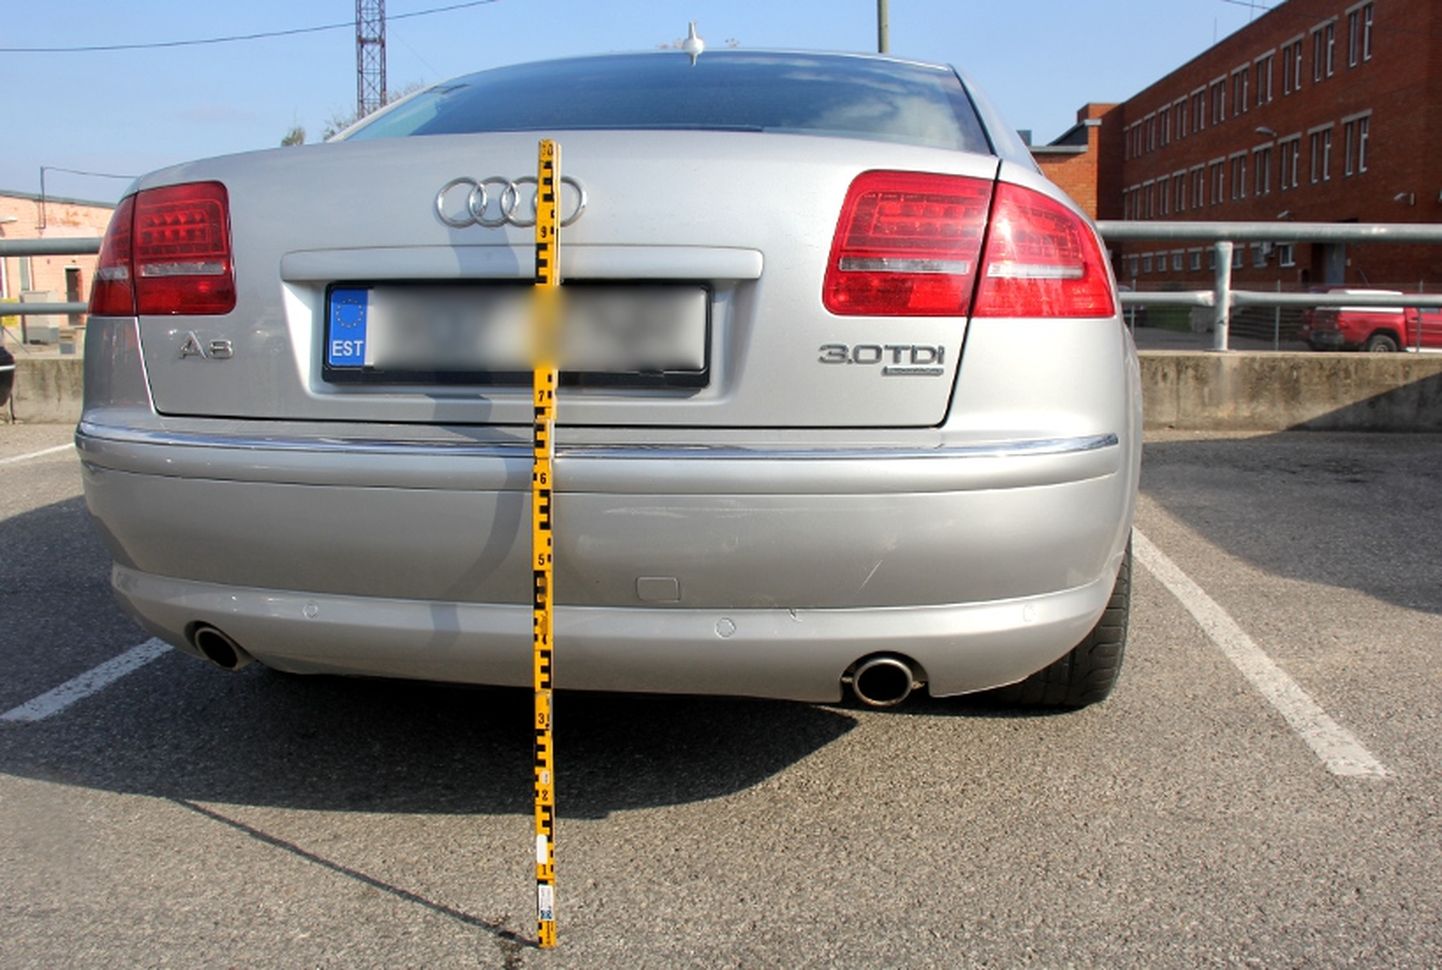 Audi sai parklas kahjustada. Otsa sõitnud autojuht põgenes sündmuskohalt.